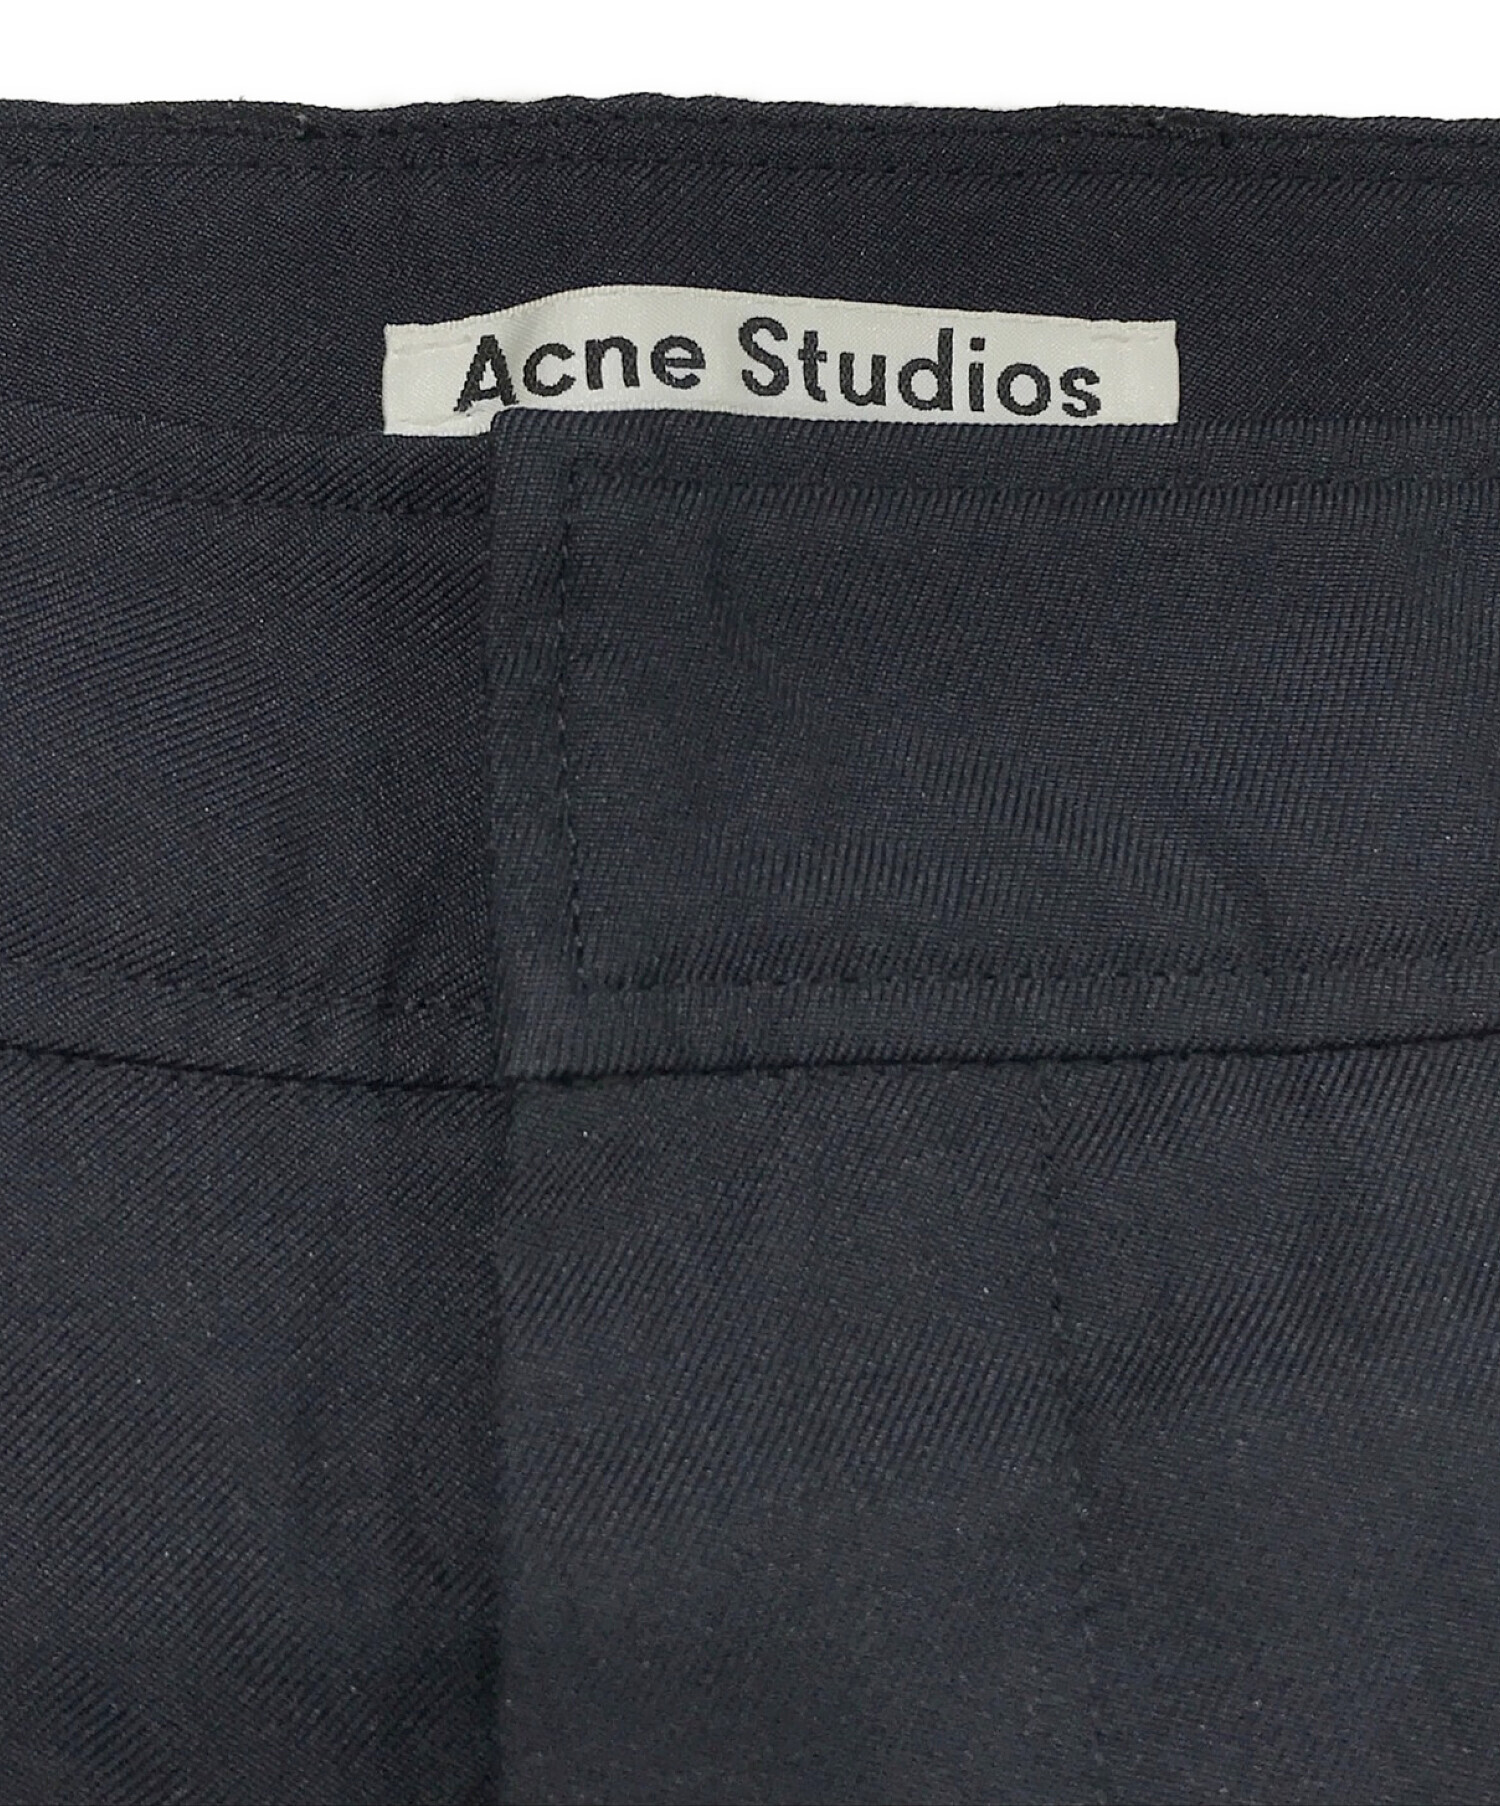 Acne studios (アクネストゥディオズ) ストレートフィットツイルトラウザーズ ネイビー サイズ:SIZE 48